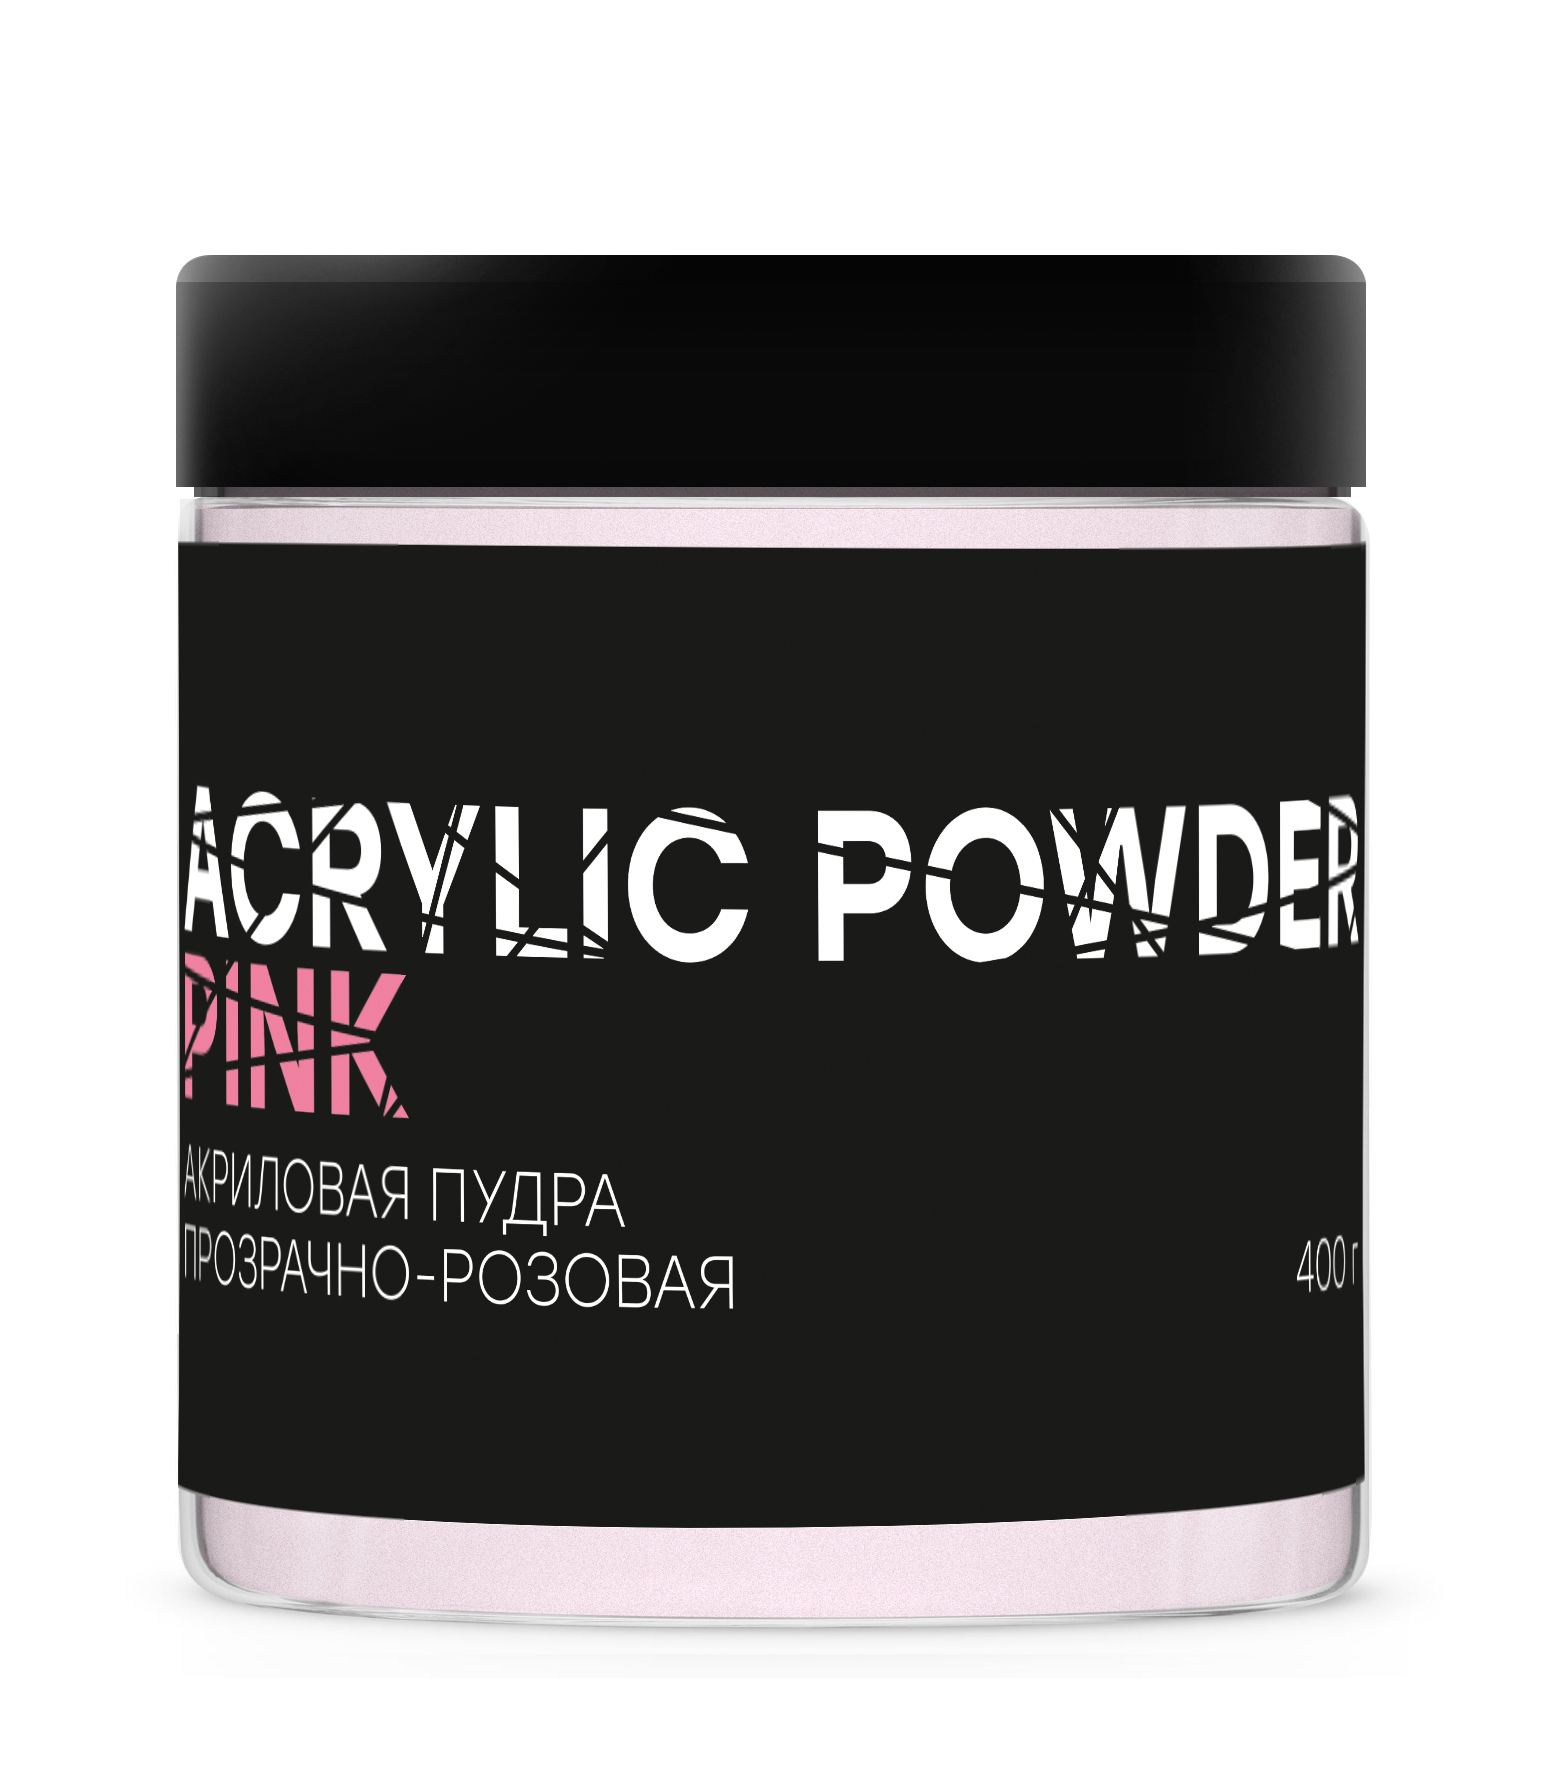 Акриловая пудра InGarden Acrylic Powder Pink прозрачно-розовая, 400 г акриловая пудра ingarden acrylic powder pink прозрачно розовая 400 г